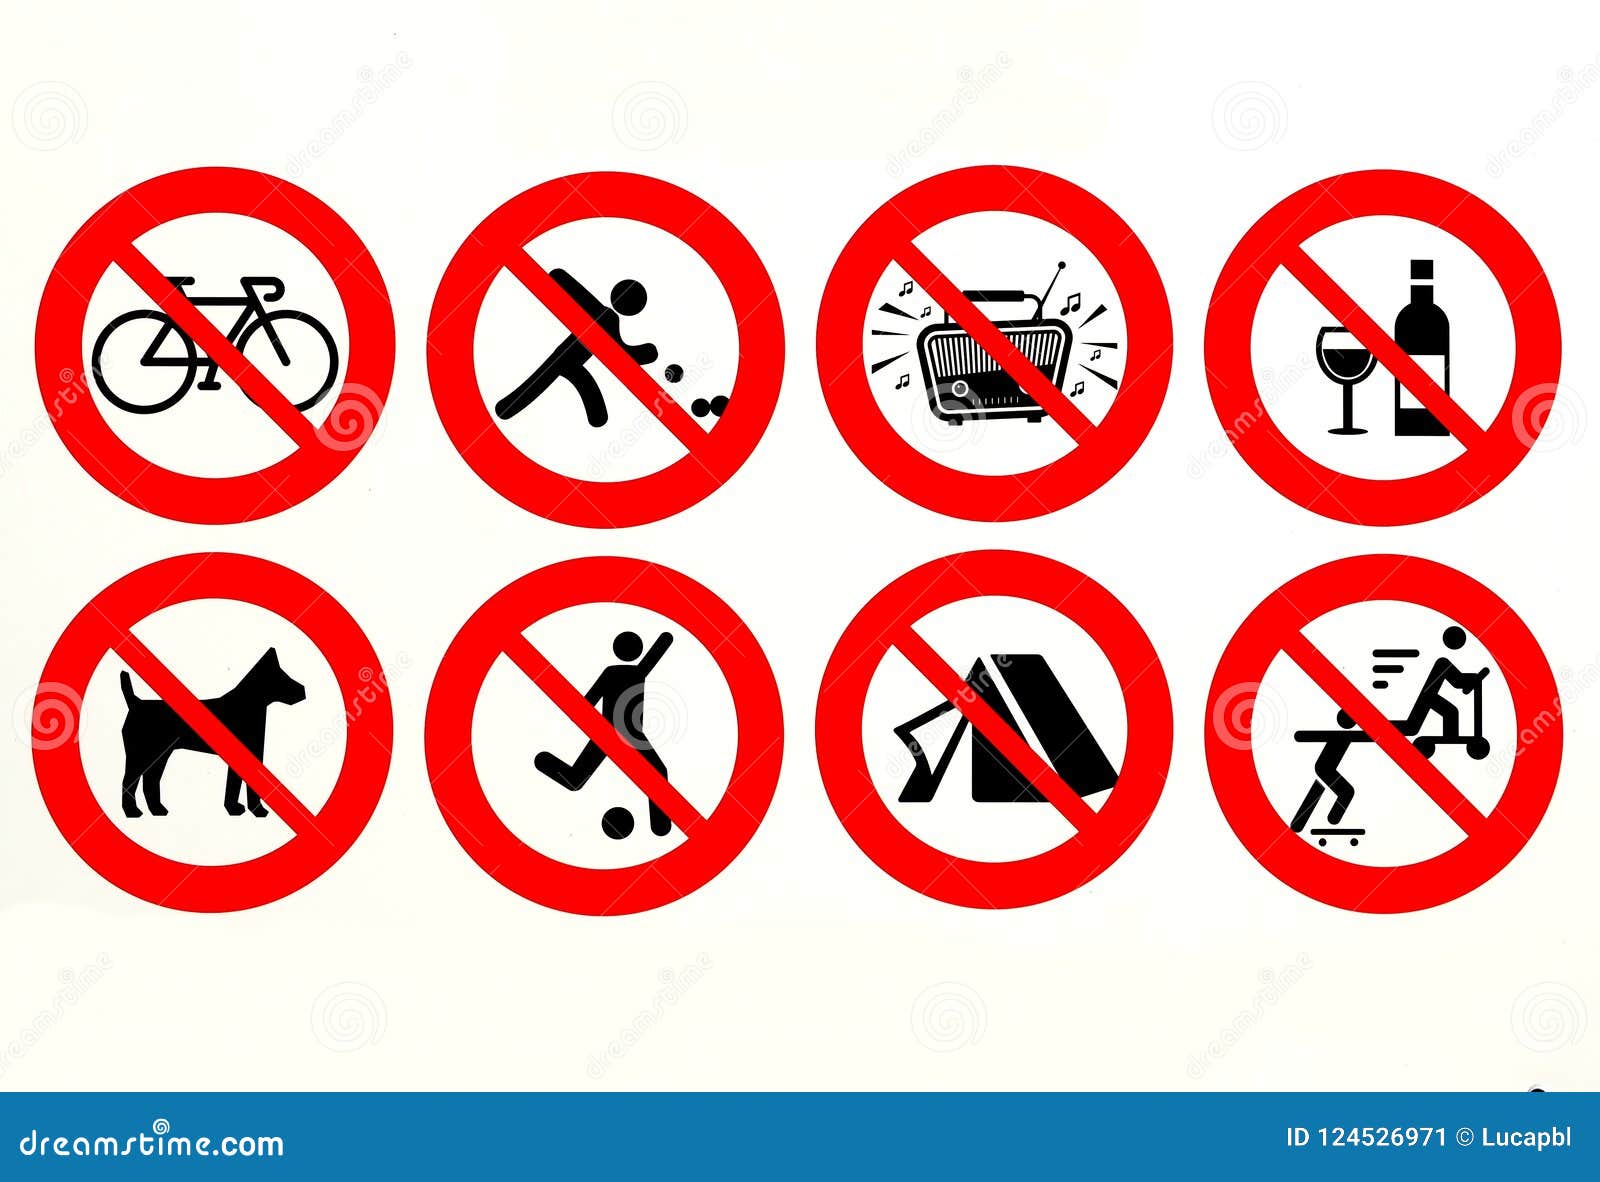 Longue liste d'interdictions utilisées sur une certaine plage européenne Il le ` s a interdit le recyclage, ne jouant des cuvettes, la musique bruyante, des matériaux en verre, le football, jouer, camper, patiner et aucun chien permis